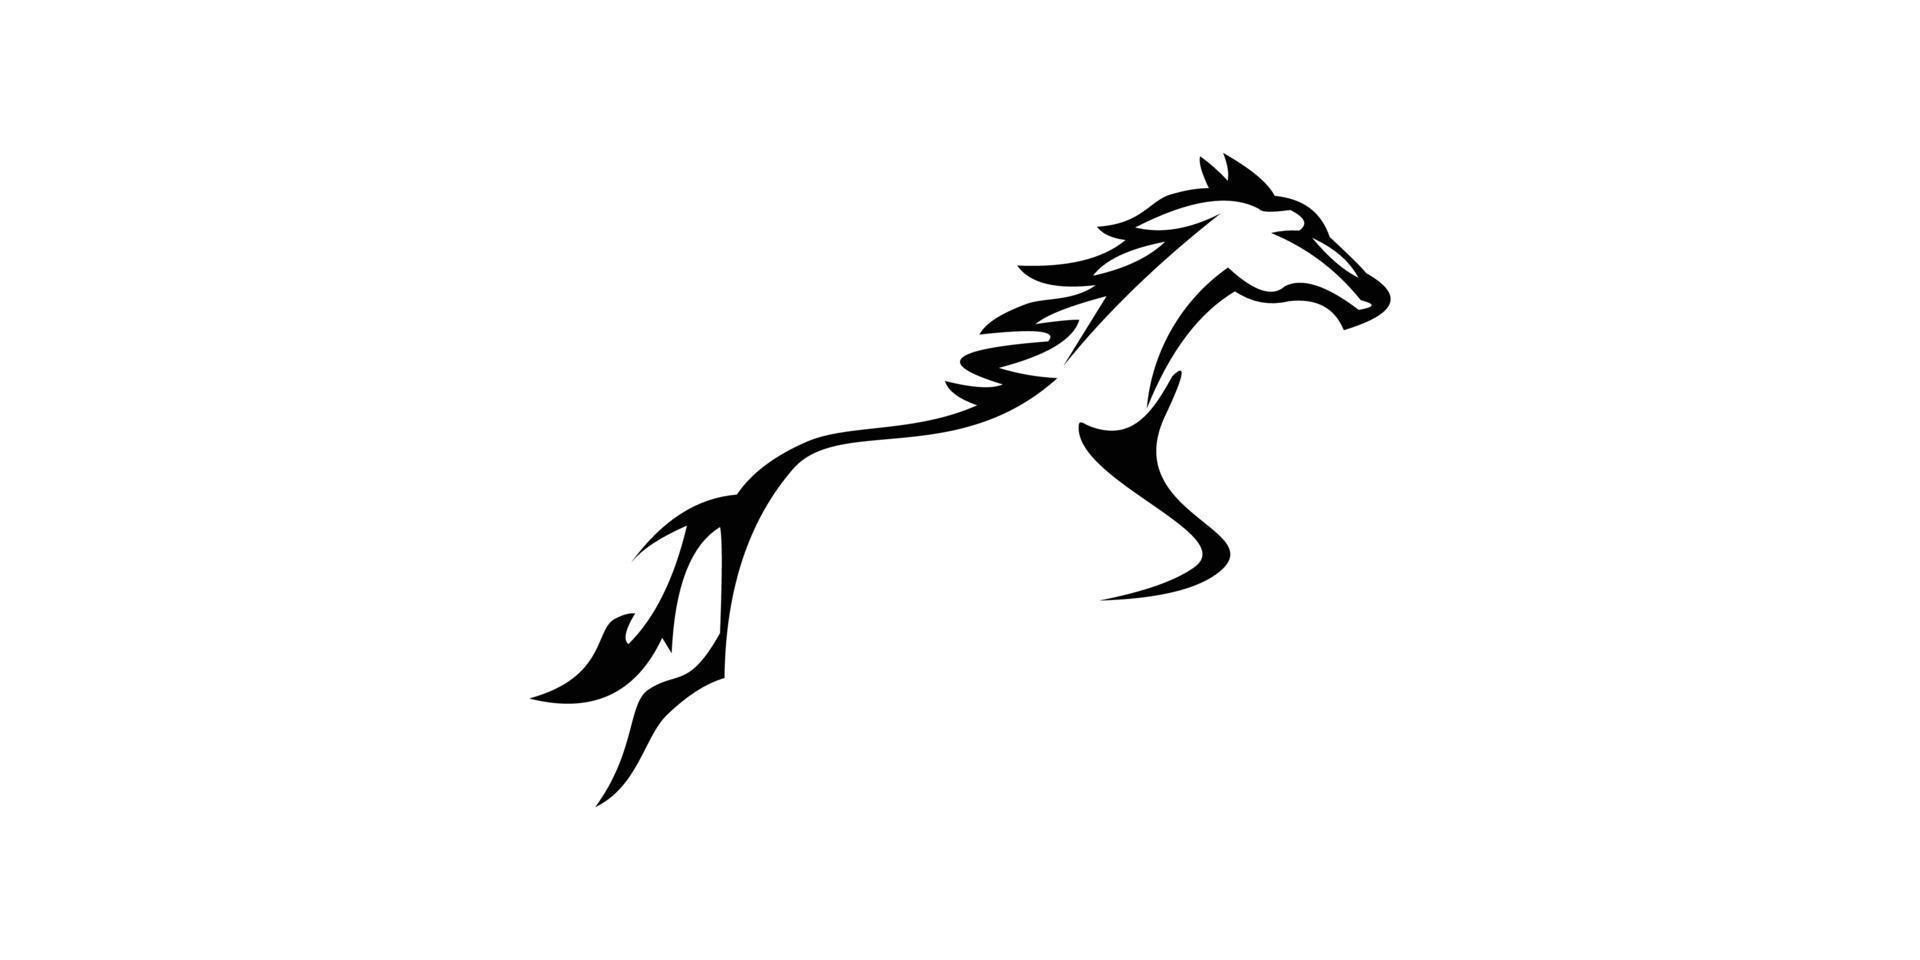 elegant Jumping horse logo vector